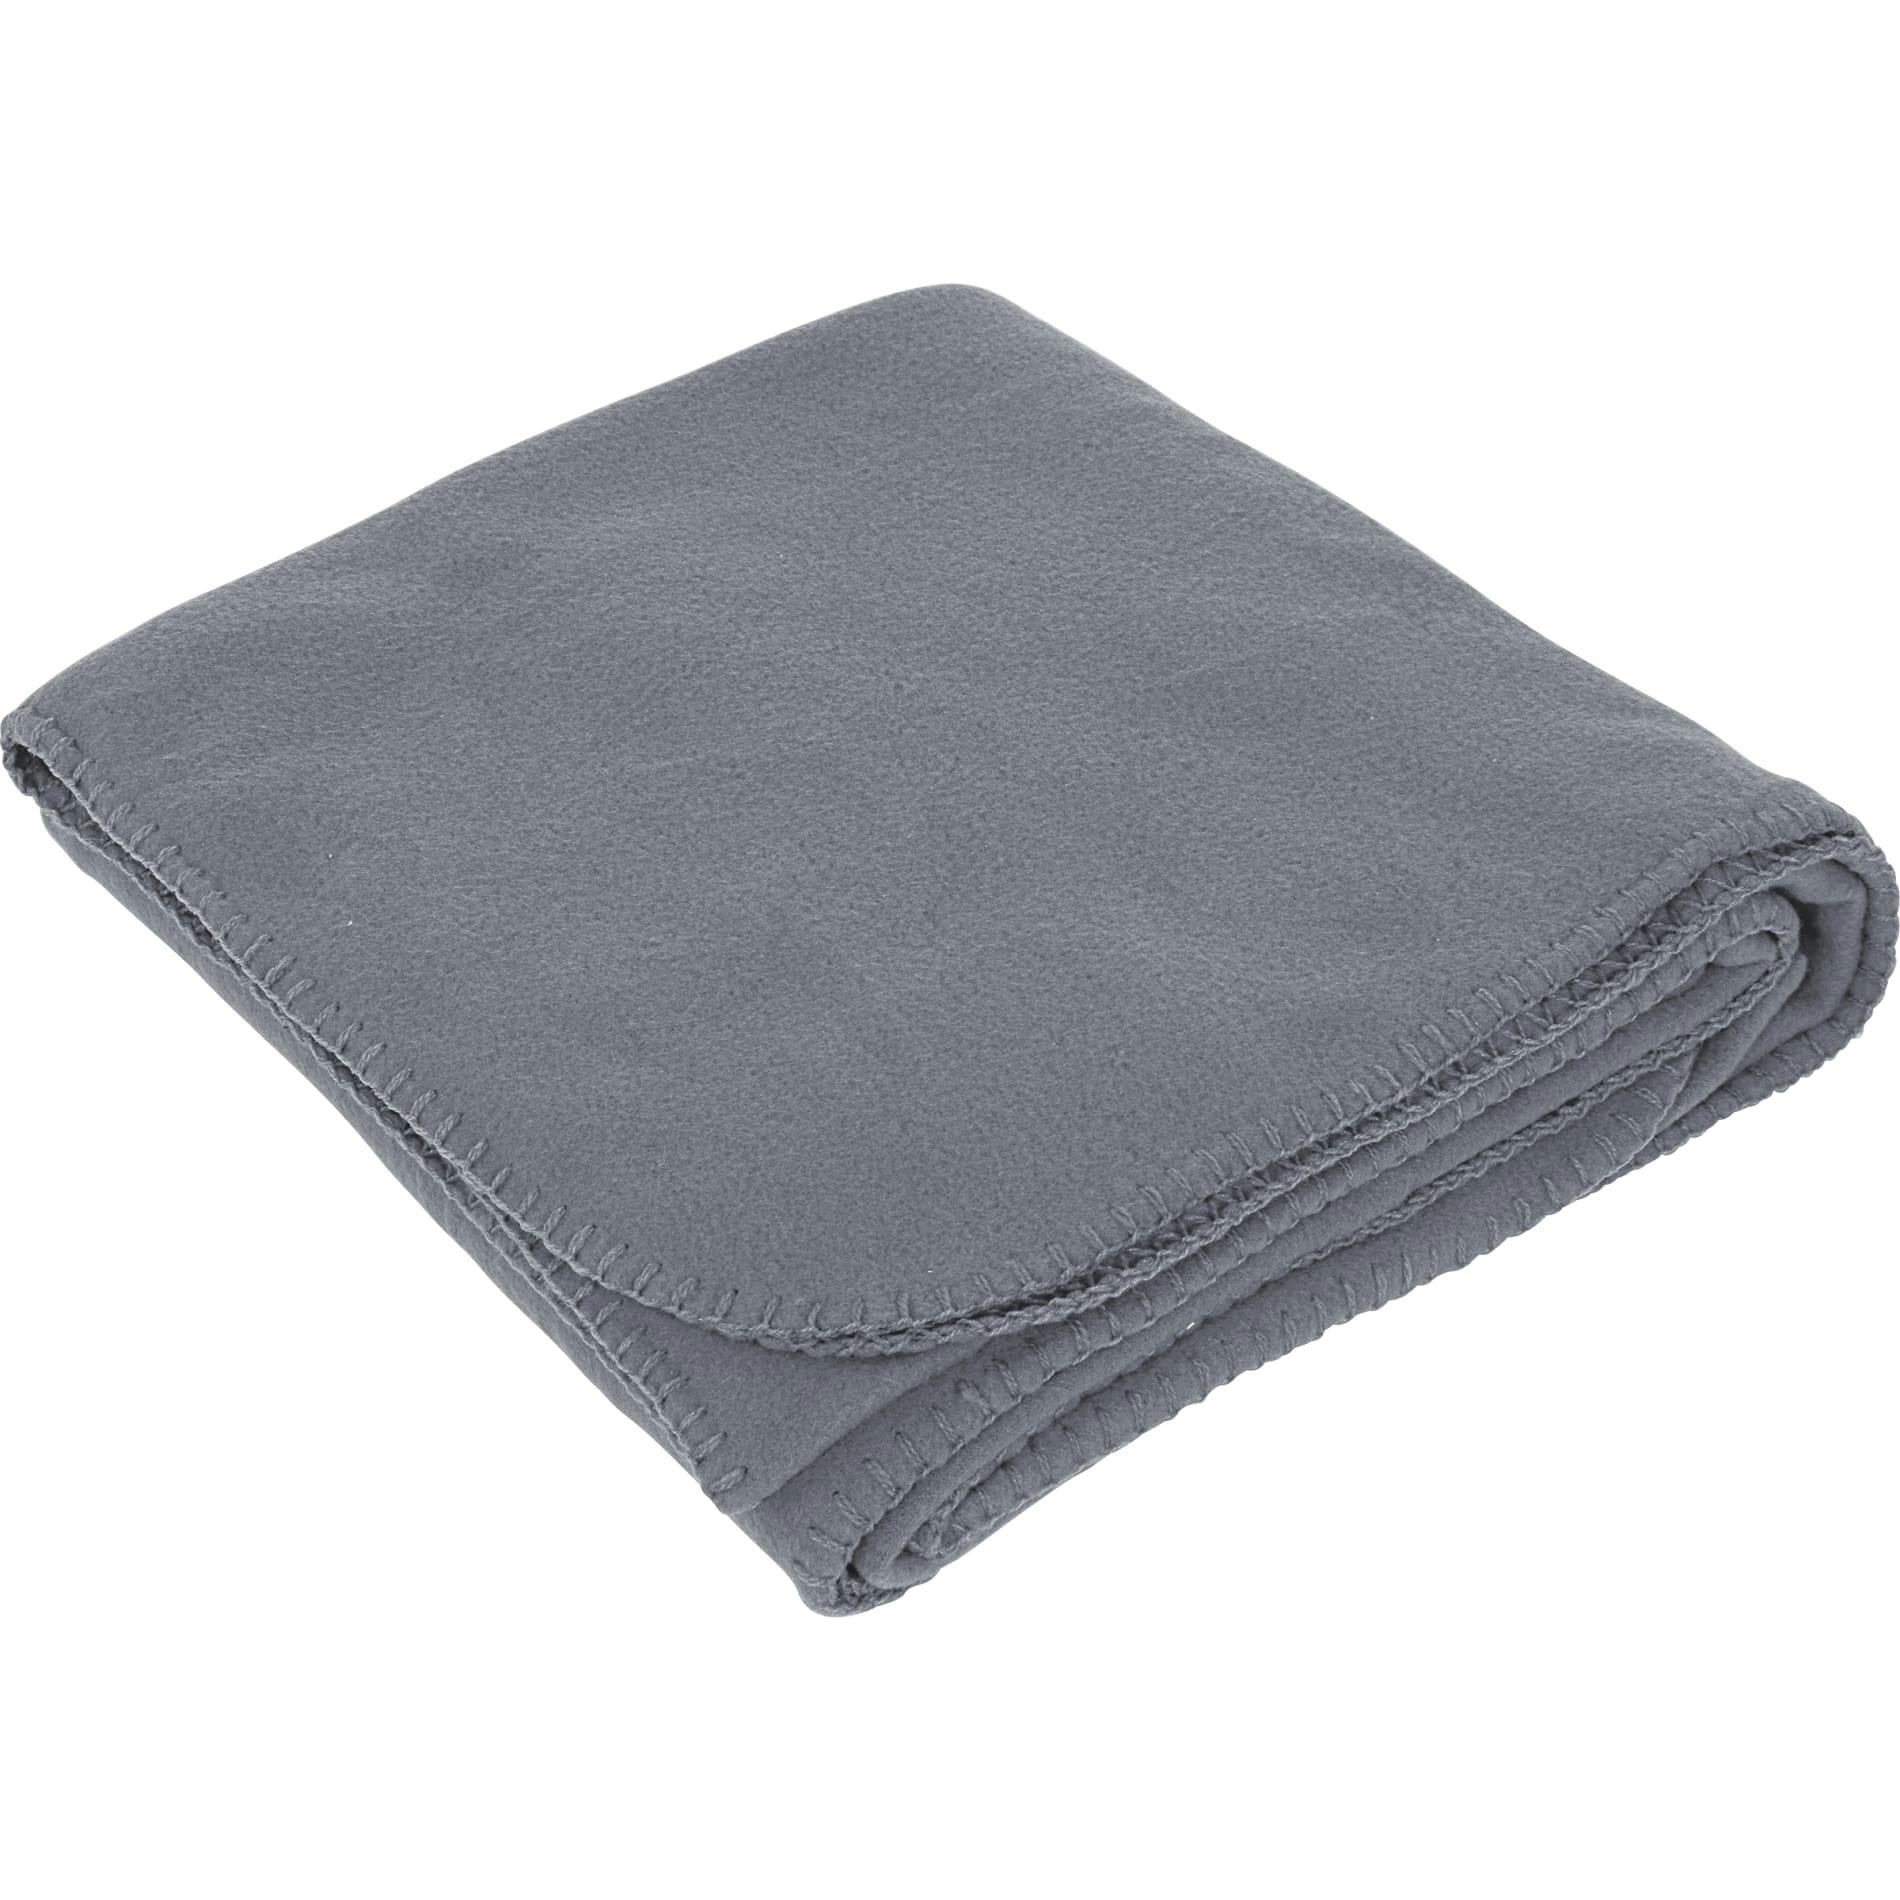 Fleece Blanket - additional Image 1